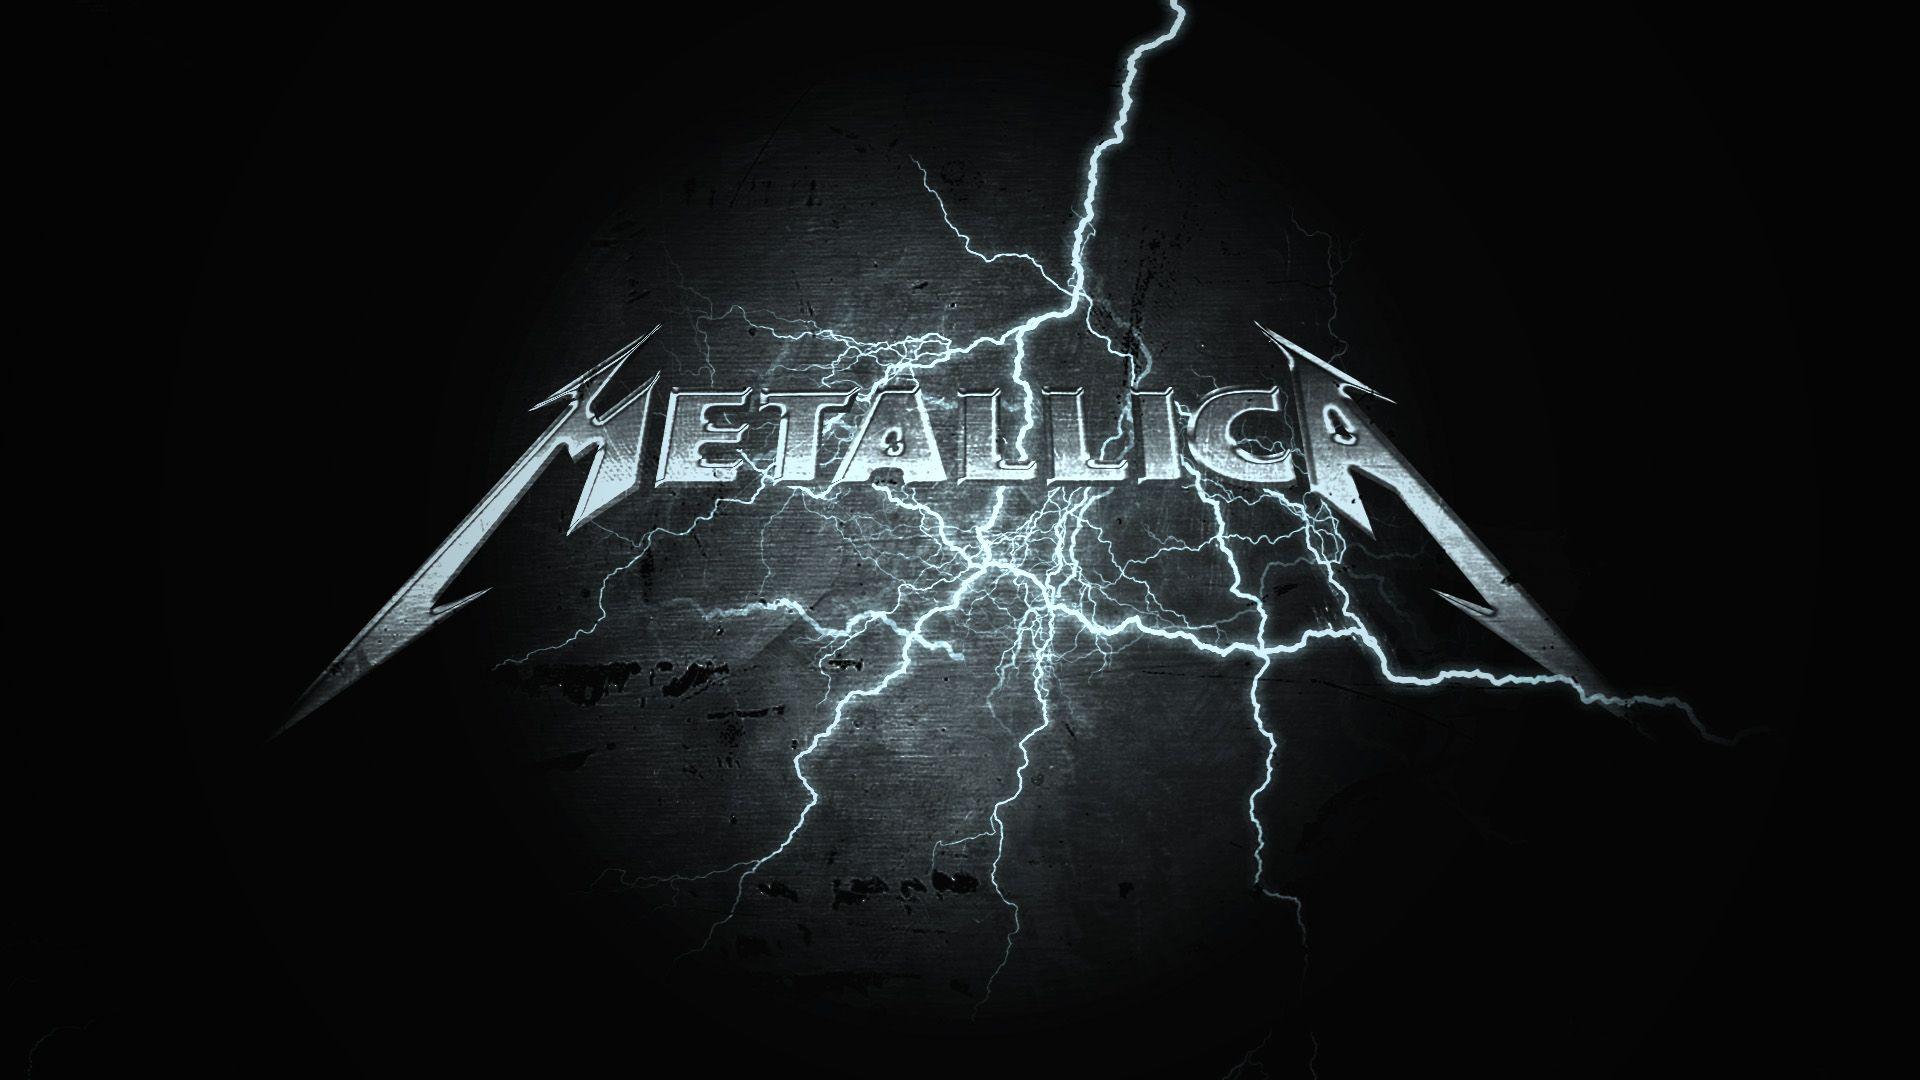 Metallica wallpaper. Metallica music, Metallica art